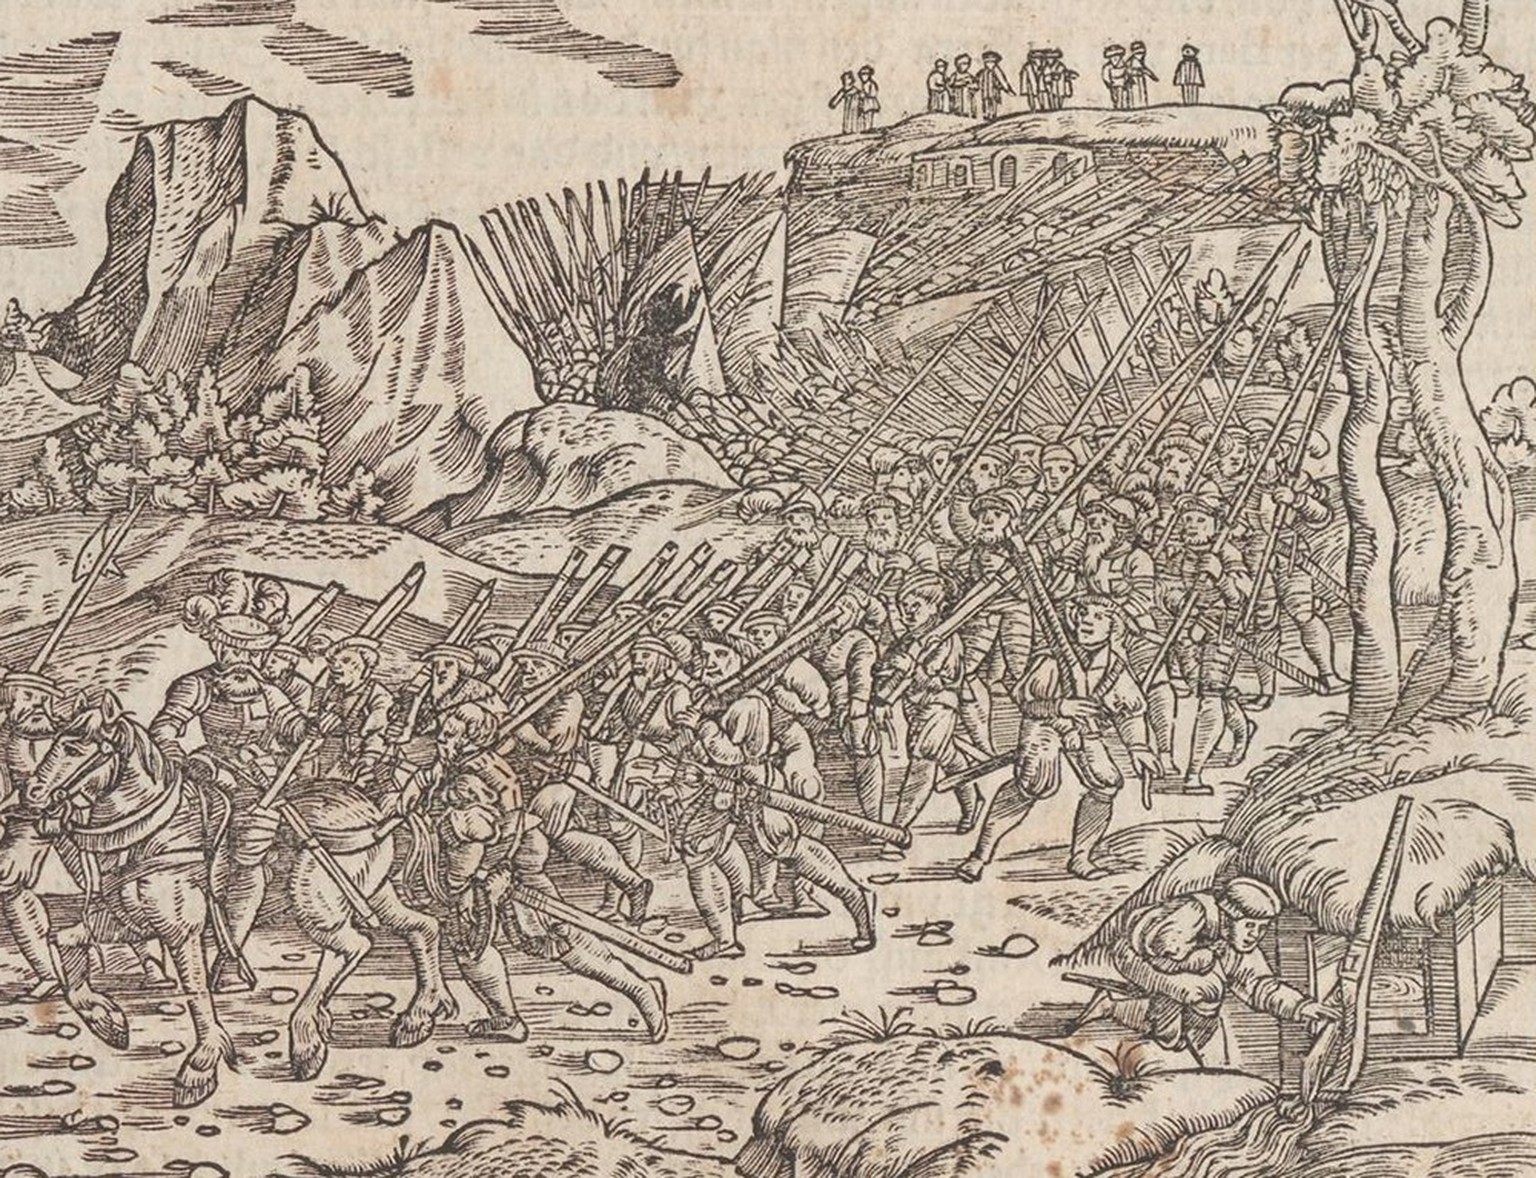 Les troupes bernoises conquièrent le canton de Vaud. Gravure sur bois de Johannes Stumpf de 1548.